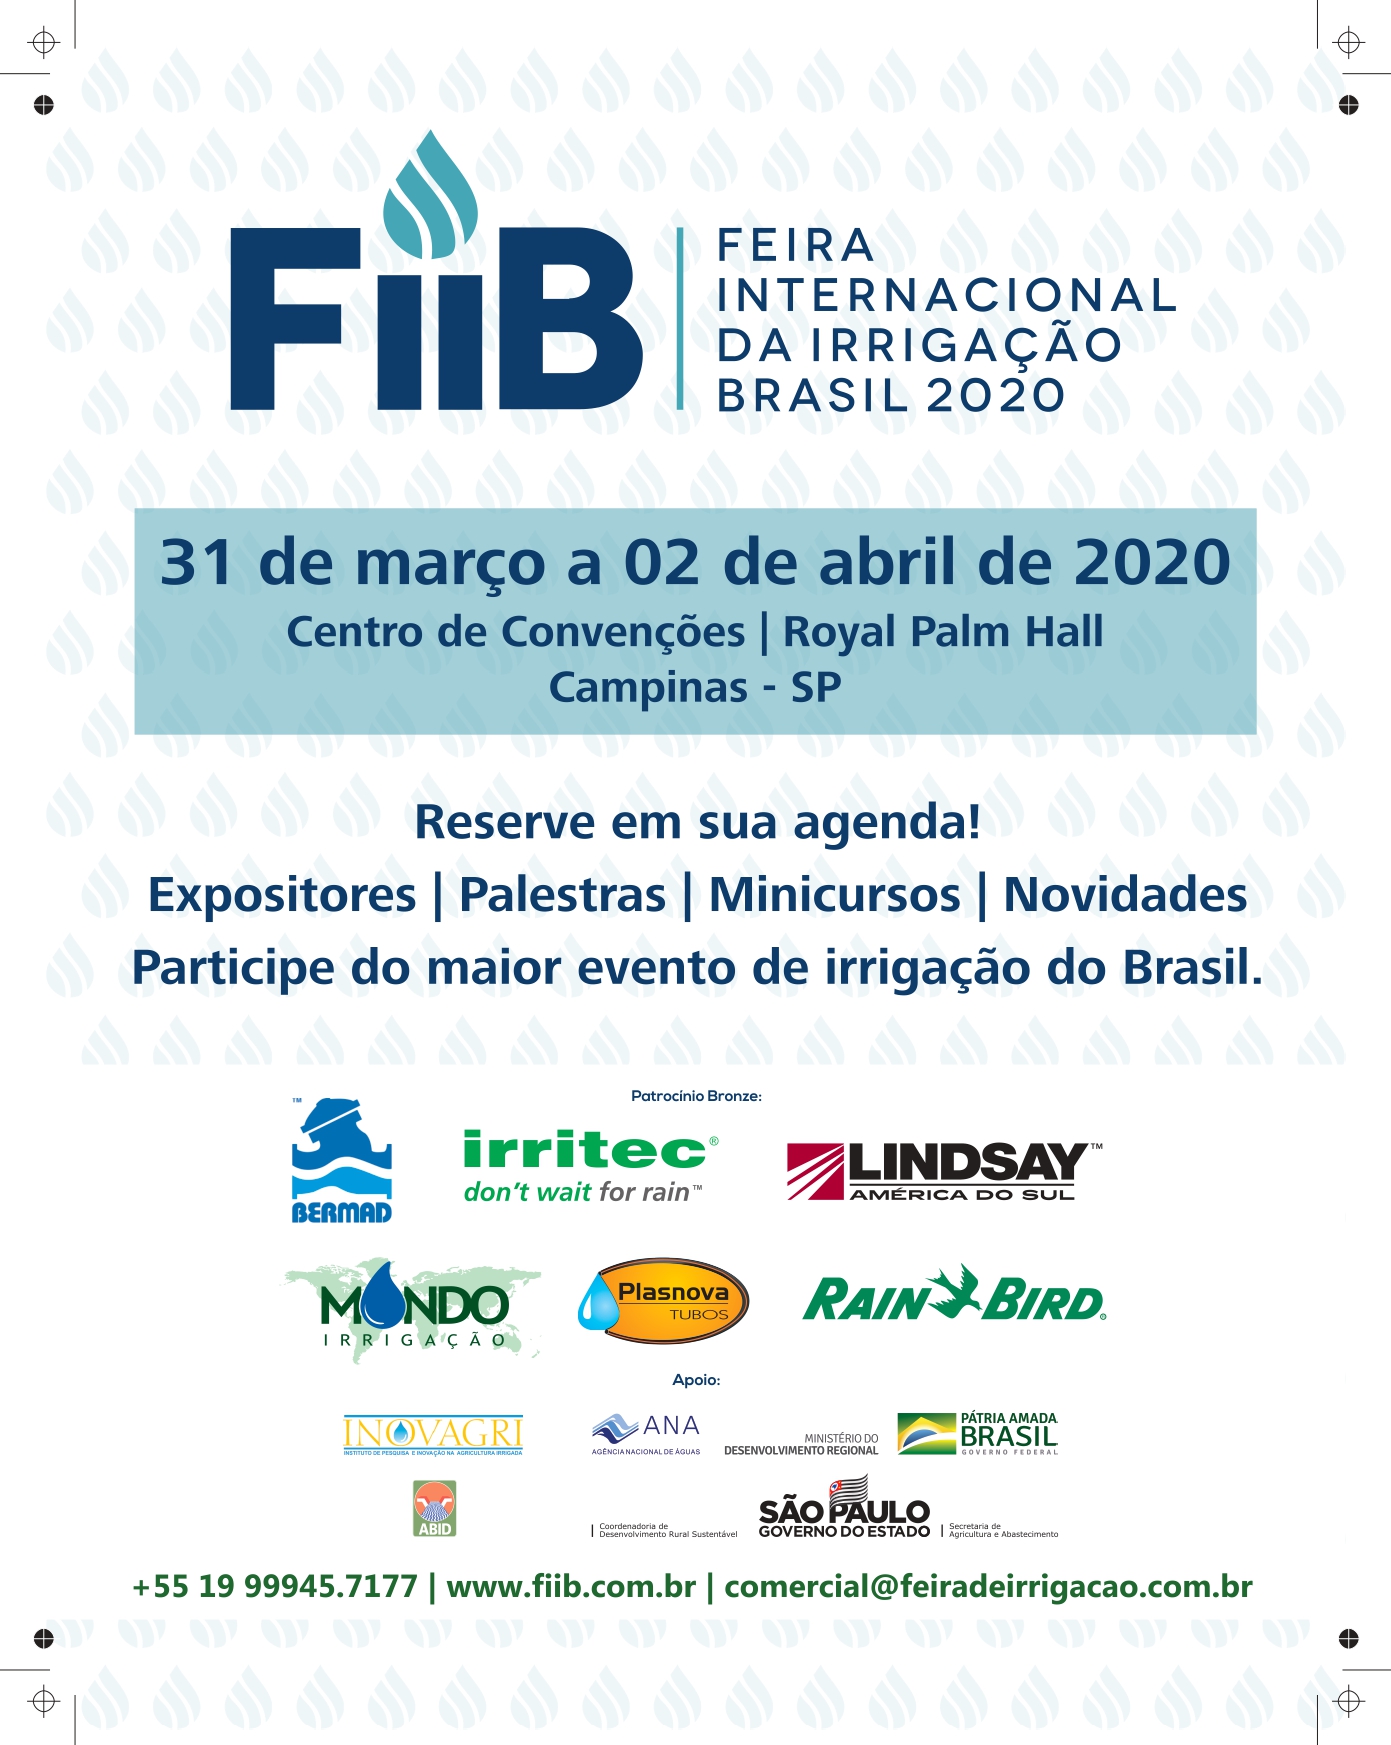 FiiB - Feira Internacional da Irrigação Brasil